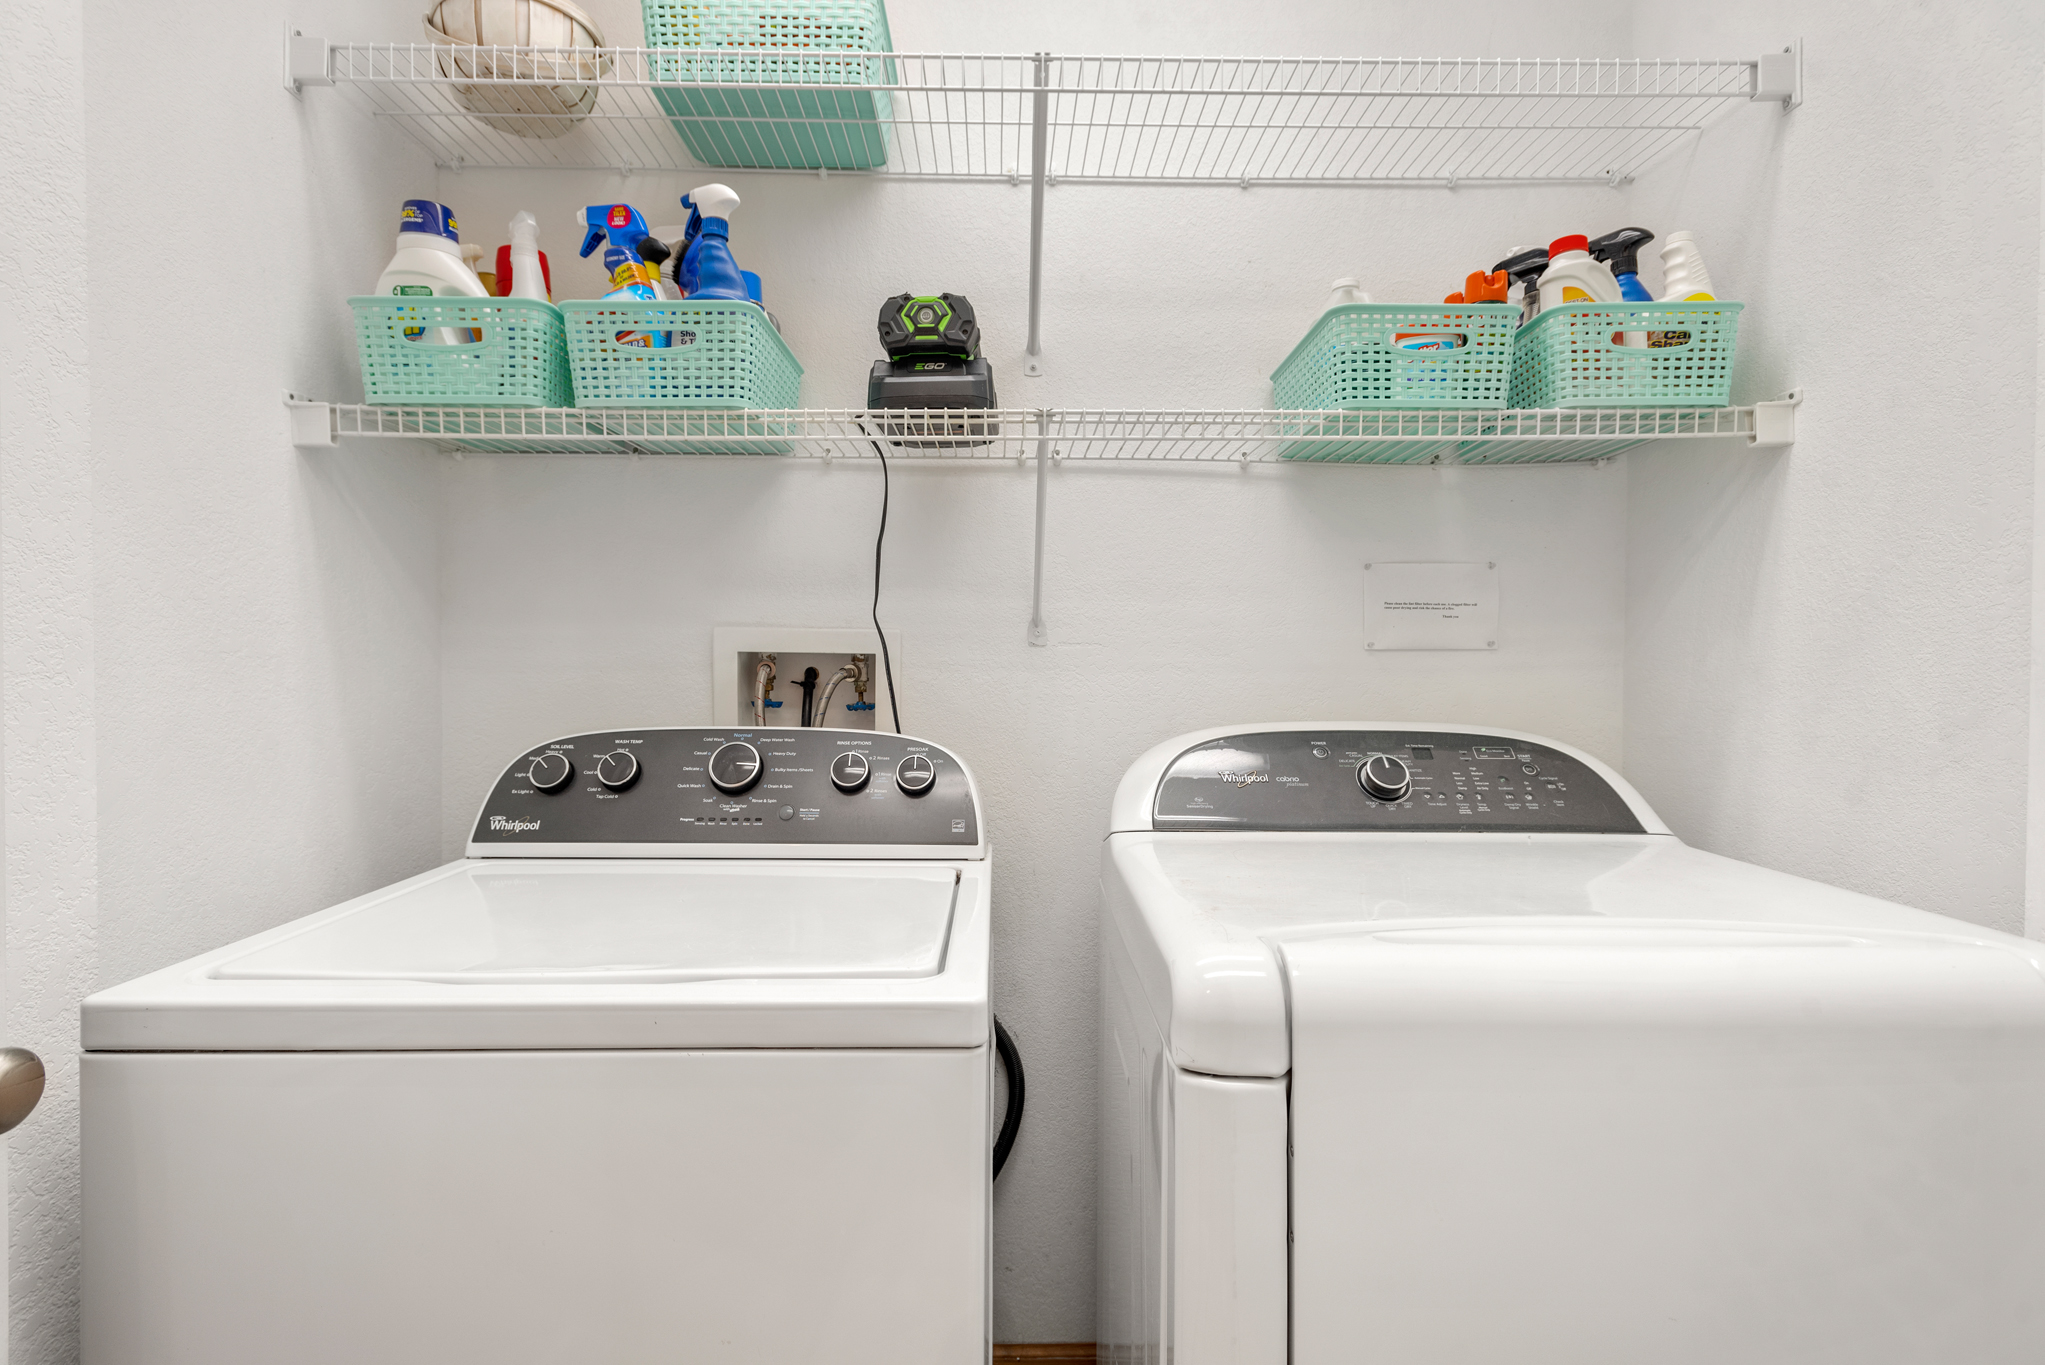 WH553: The Salt Shaker | Bottom Level Laundry Area